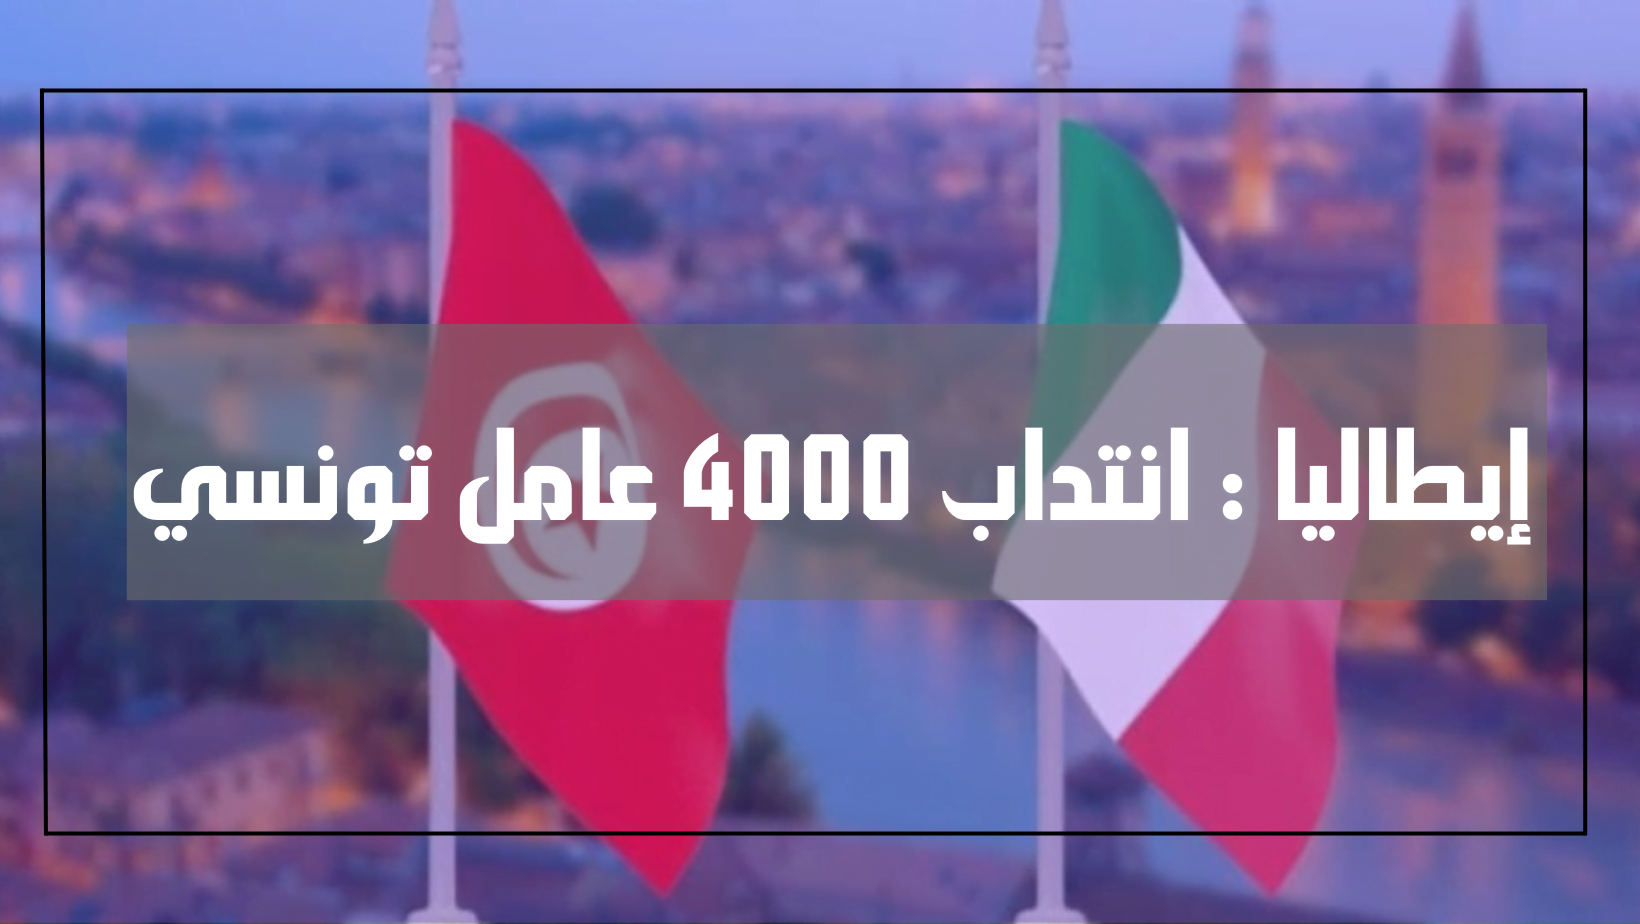 إيطاليا : انتداب 4000 عامل تونسي